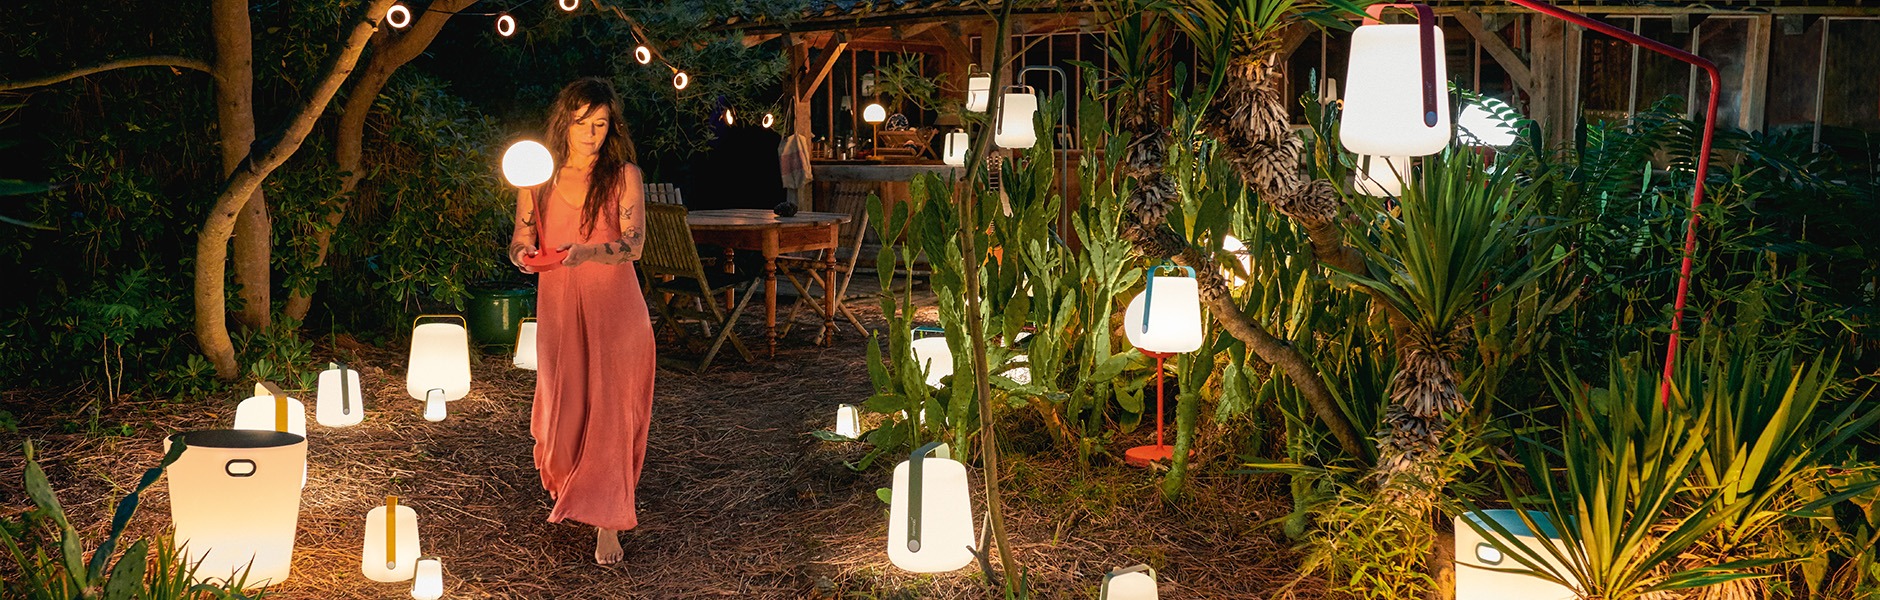 Leuchte – Gartenbeleuchtung Situation für die jede perfekte Stimmungsvolle